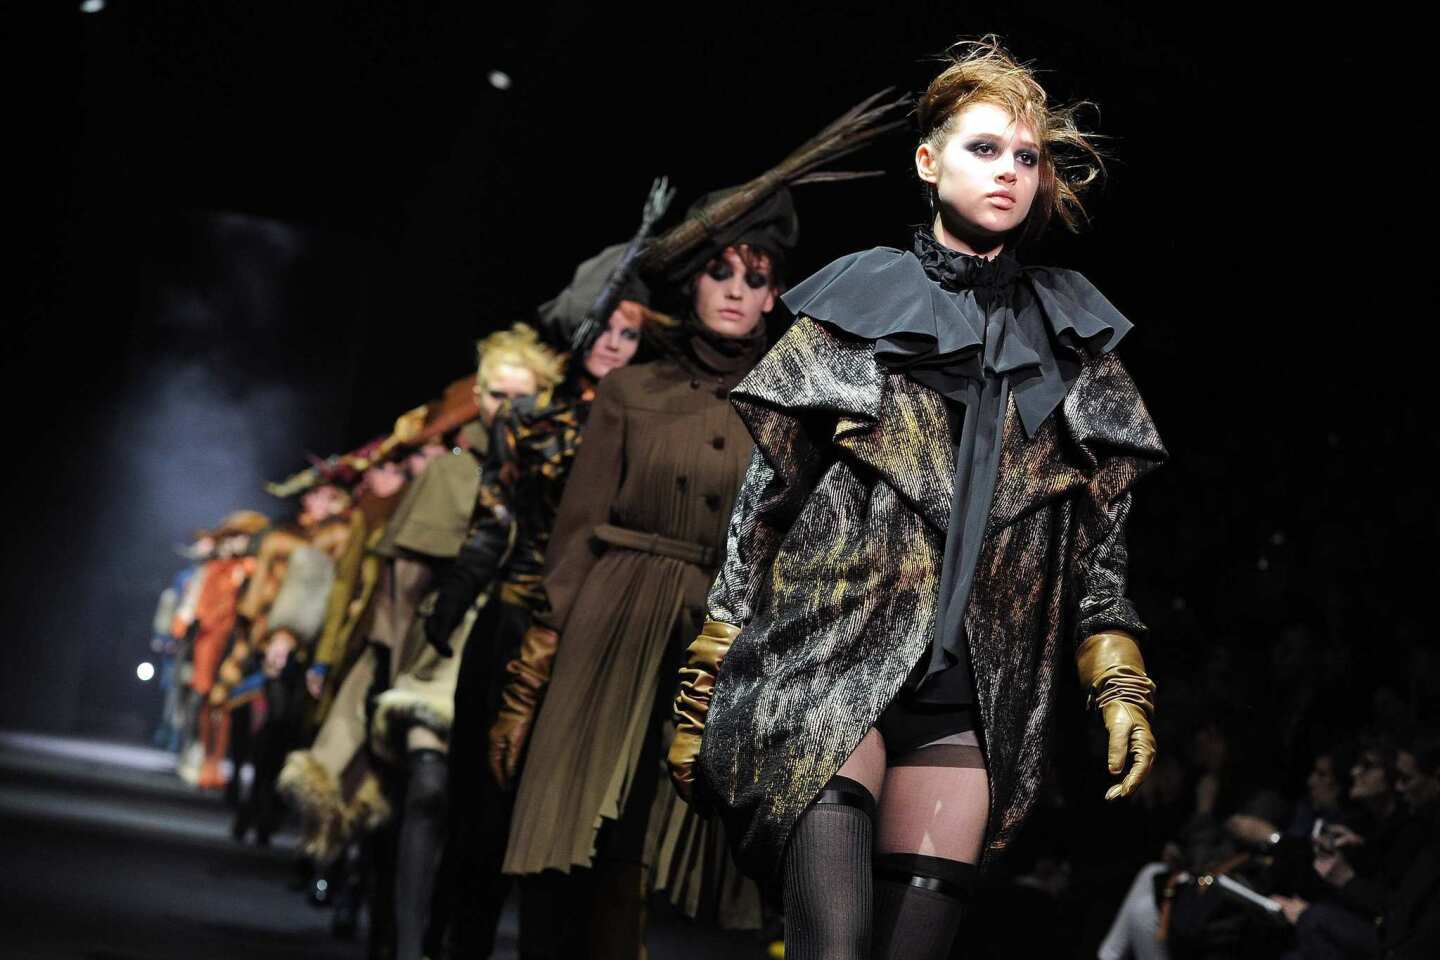 John Galliano: Runway - Paris Fashion Week Womenswear Fall/Winter 2012